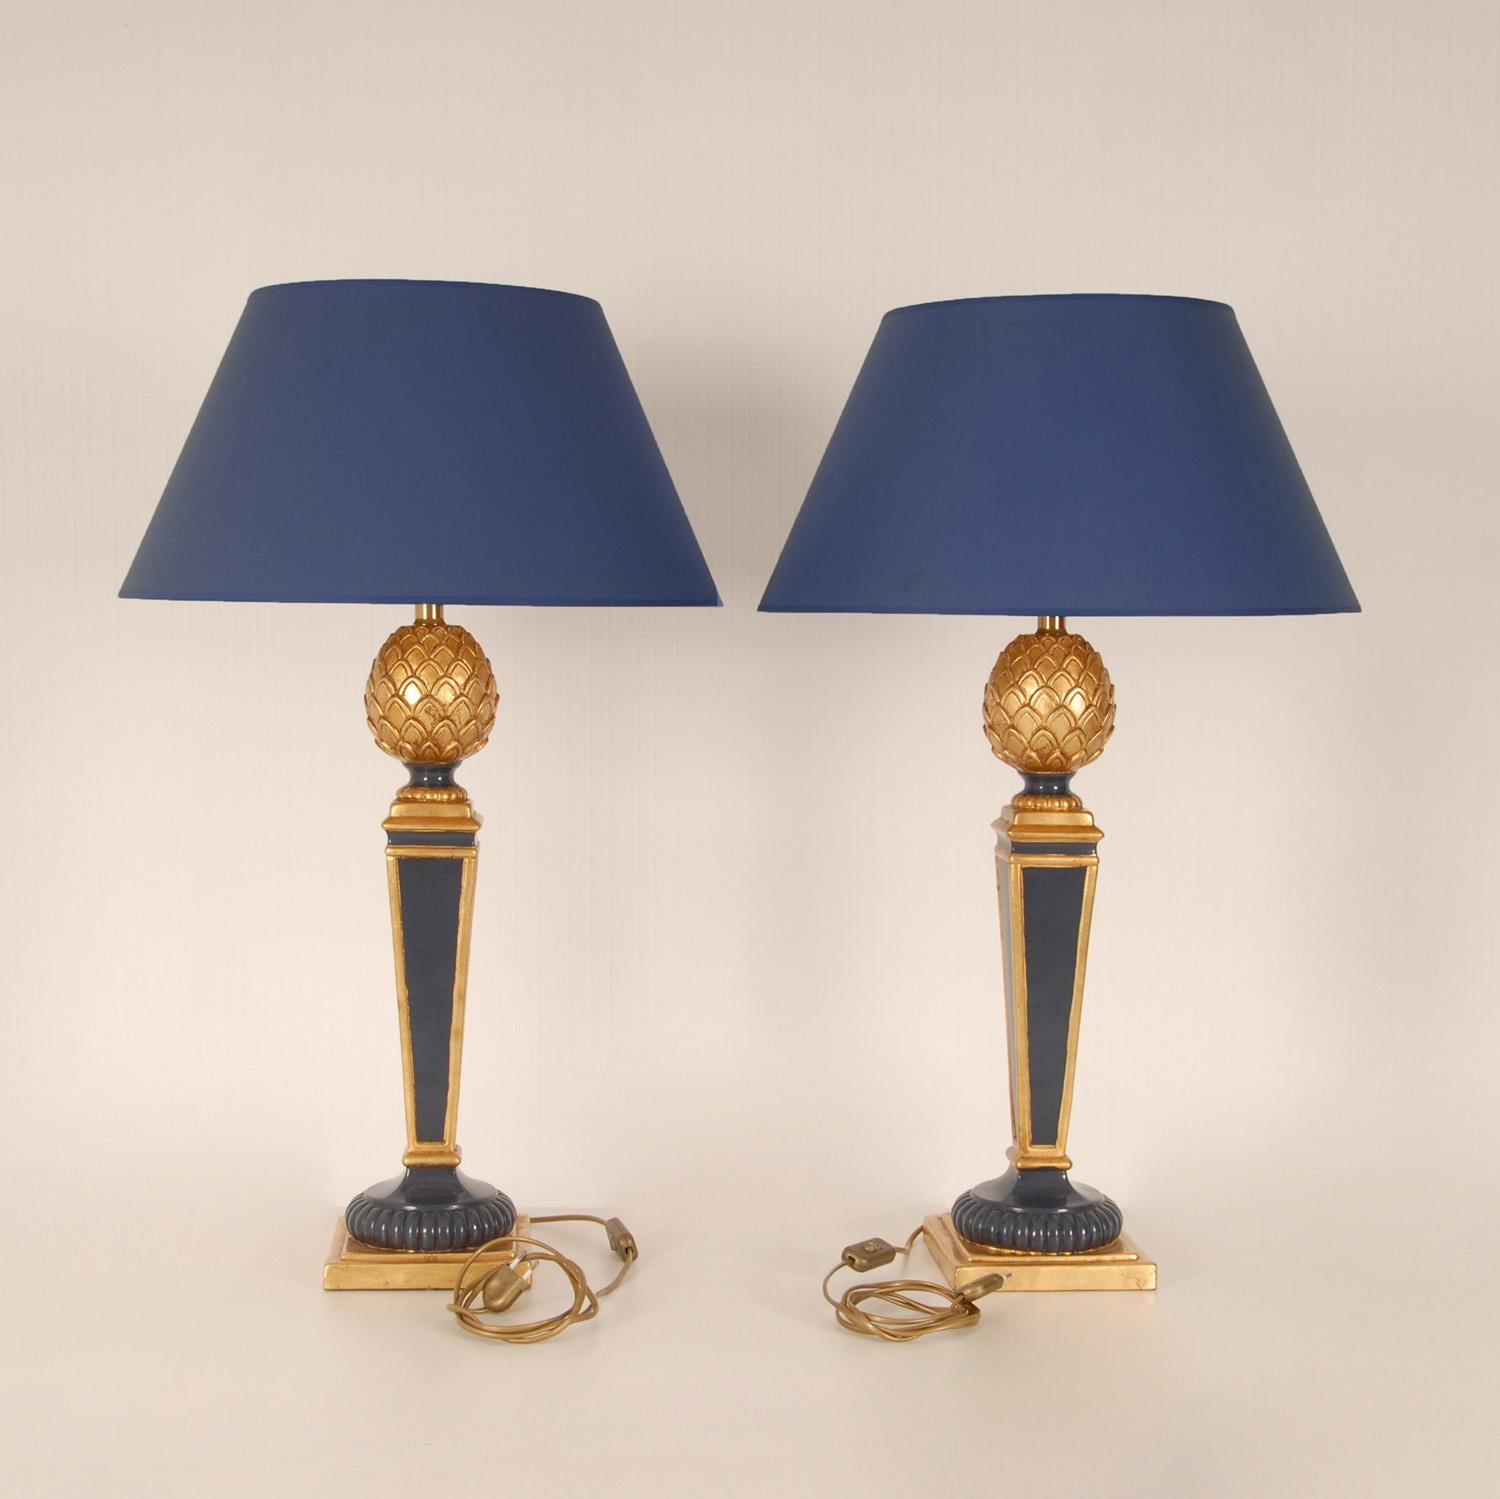 Fin du 20e siècle Lampes Vintage Françaises haut de gamme Lampes de table ananas en bois doré bleu, une paire en vente